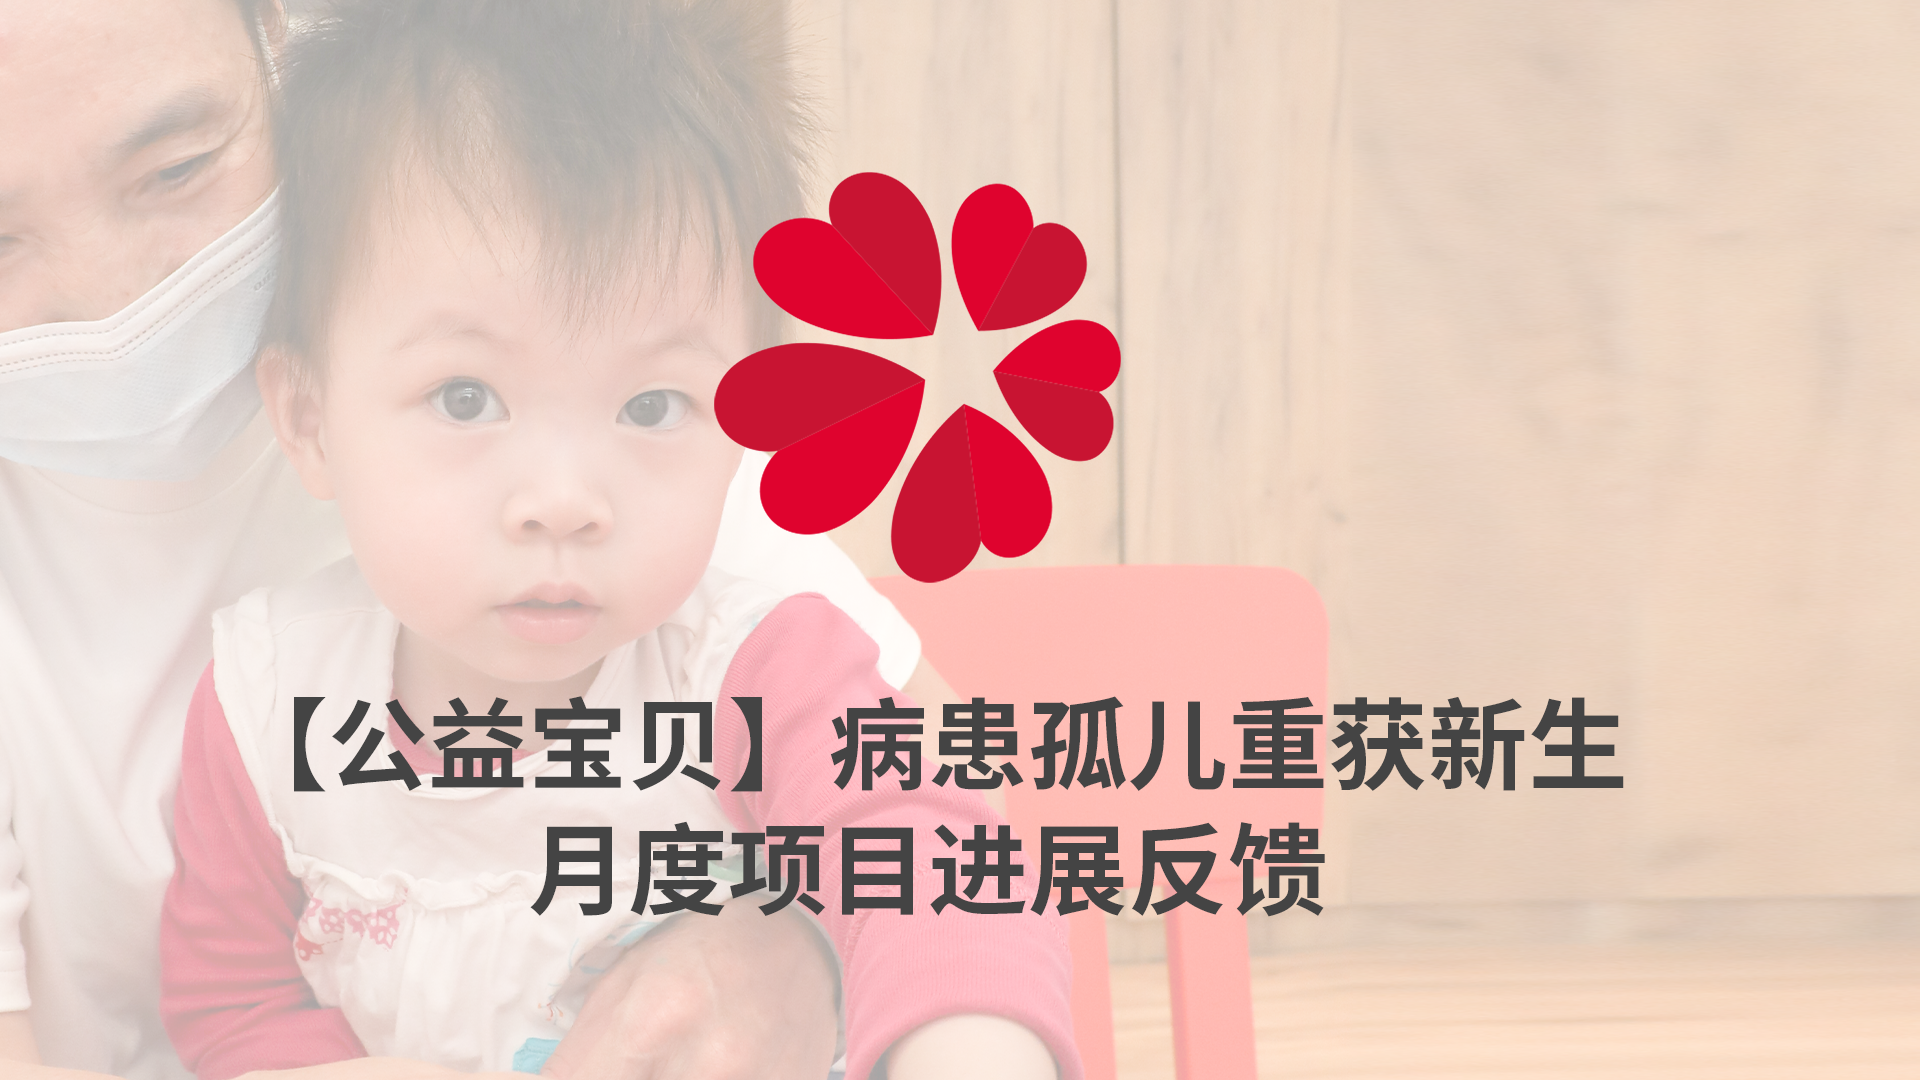 【XIN 益佰项目】病患孤儿重获新生 2023 年 11 月项目进展反馈